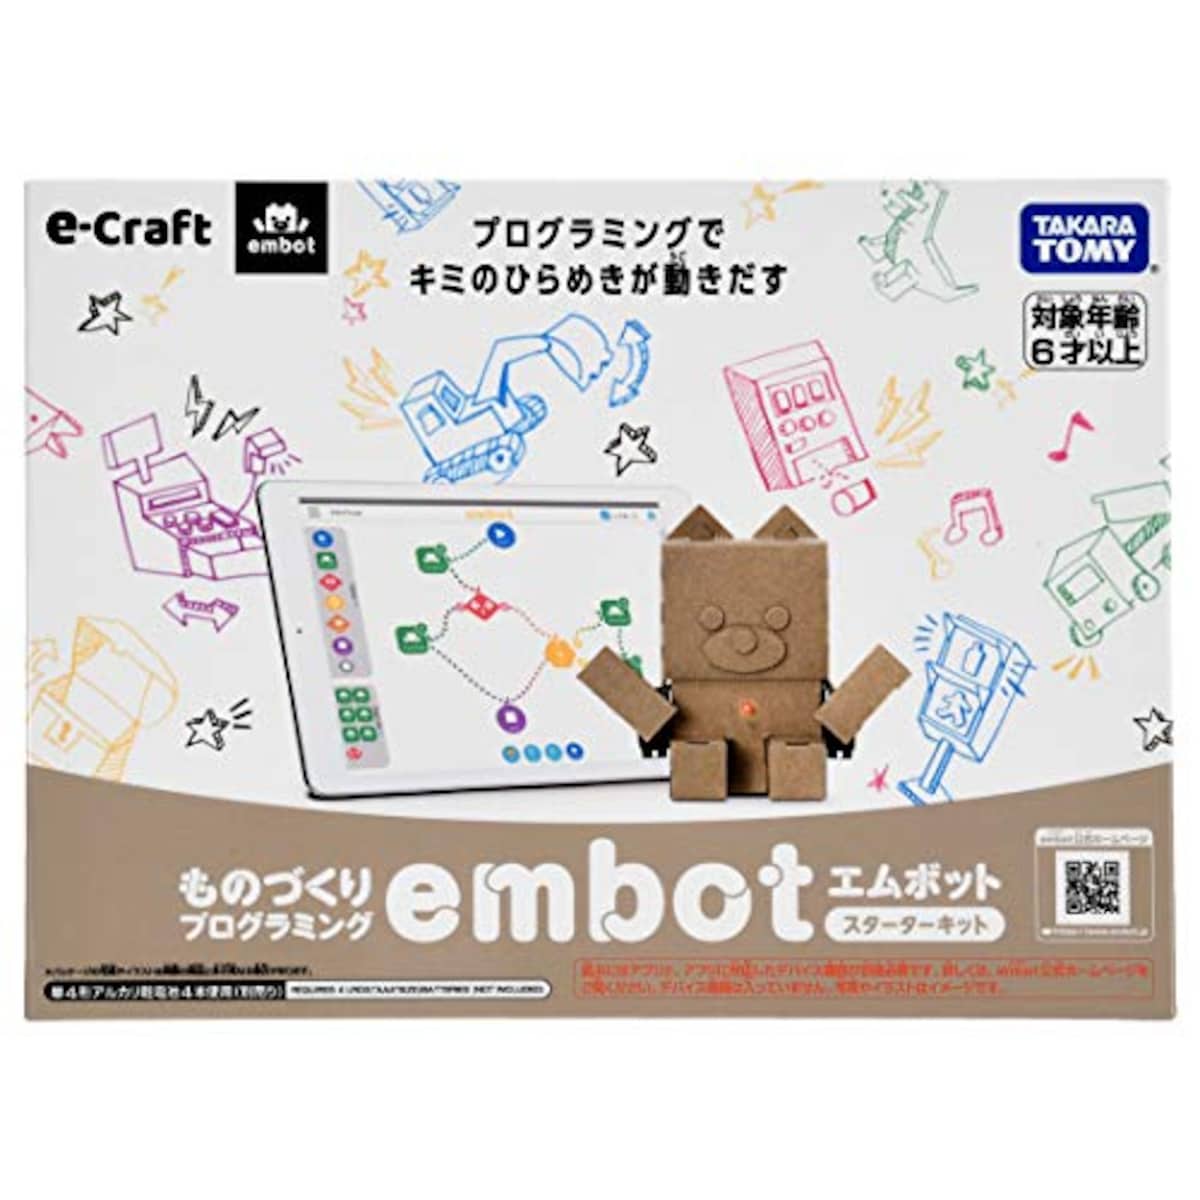  教育・知育ロボット embot(e-craftシリーズ)画像5 